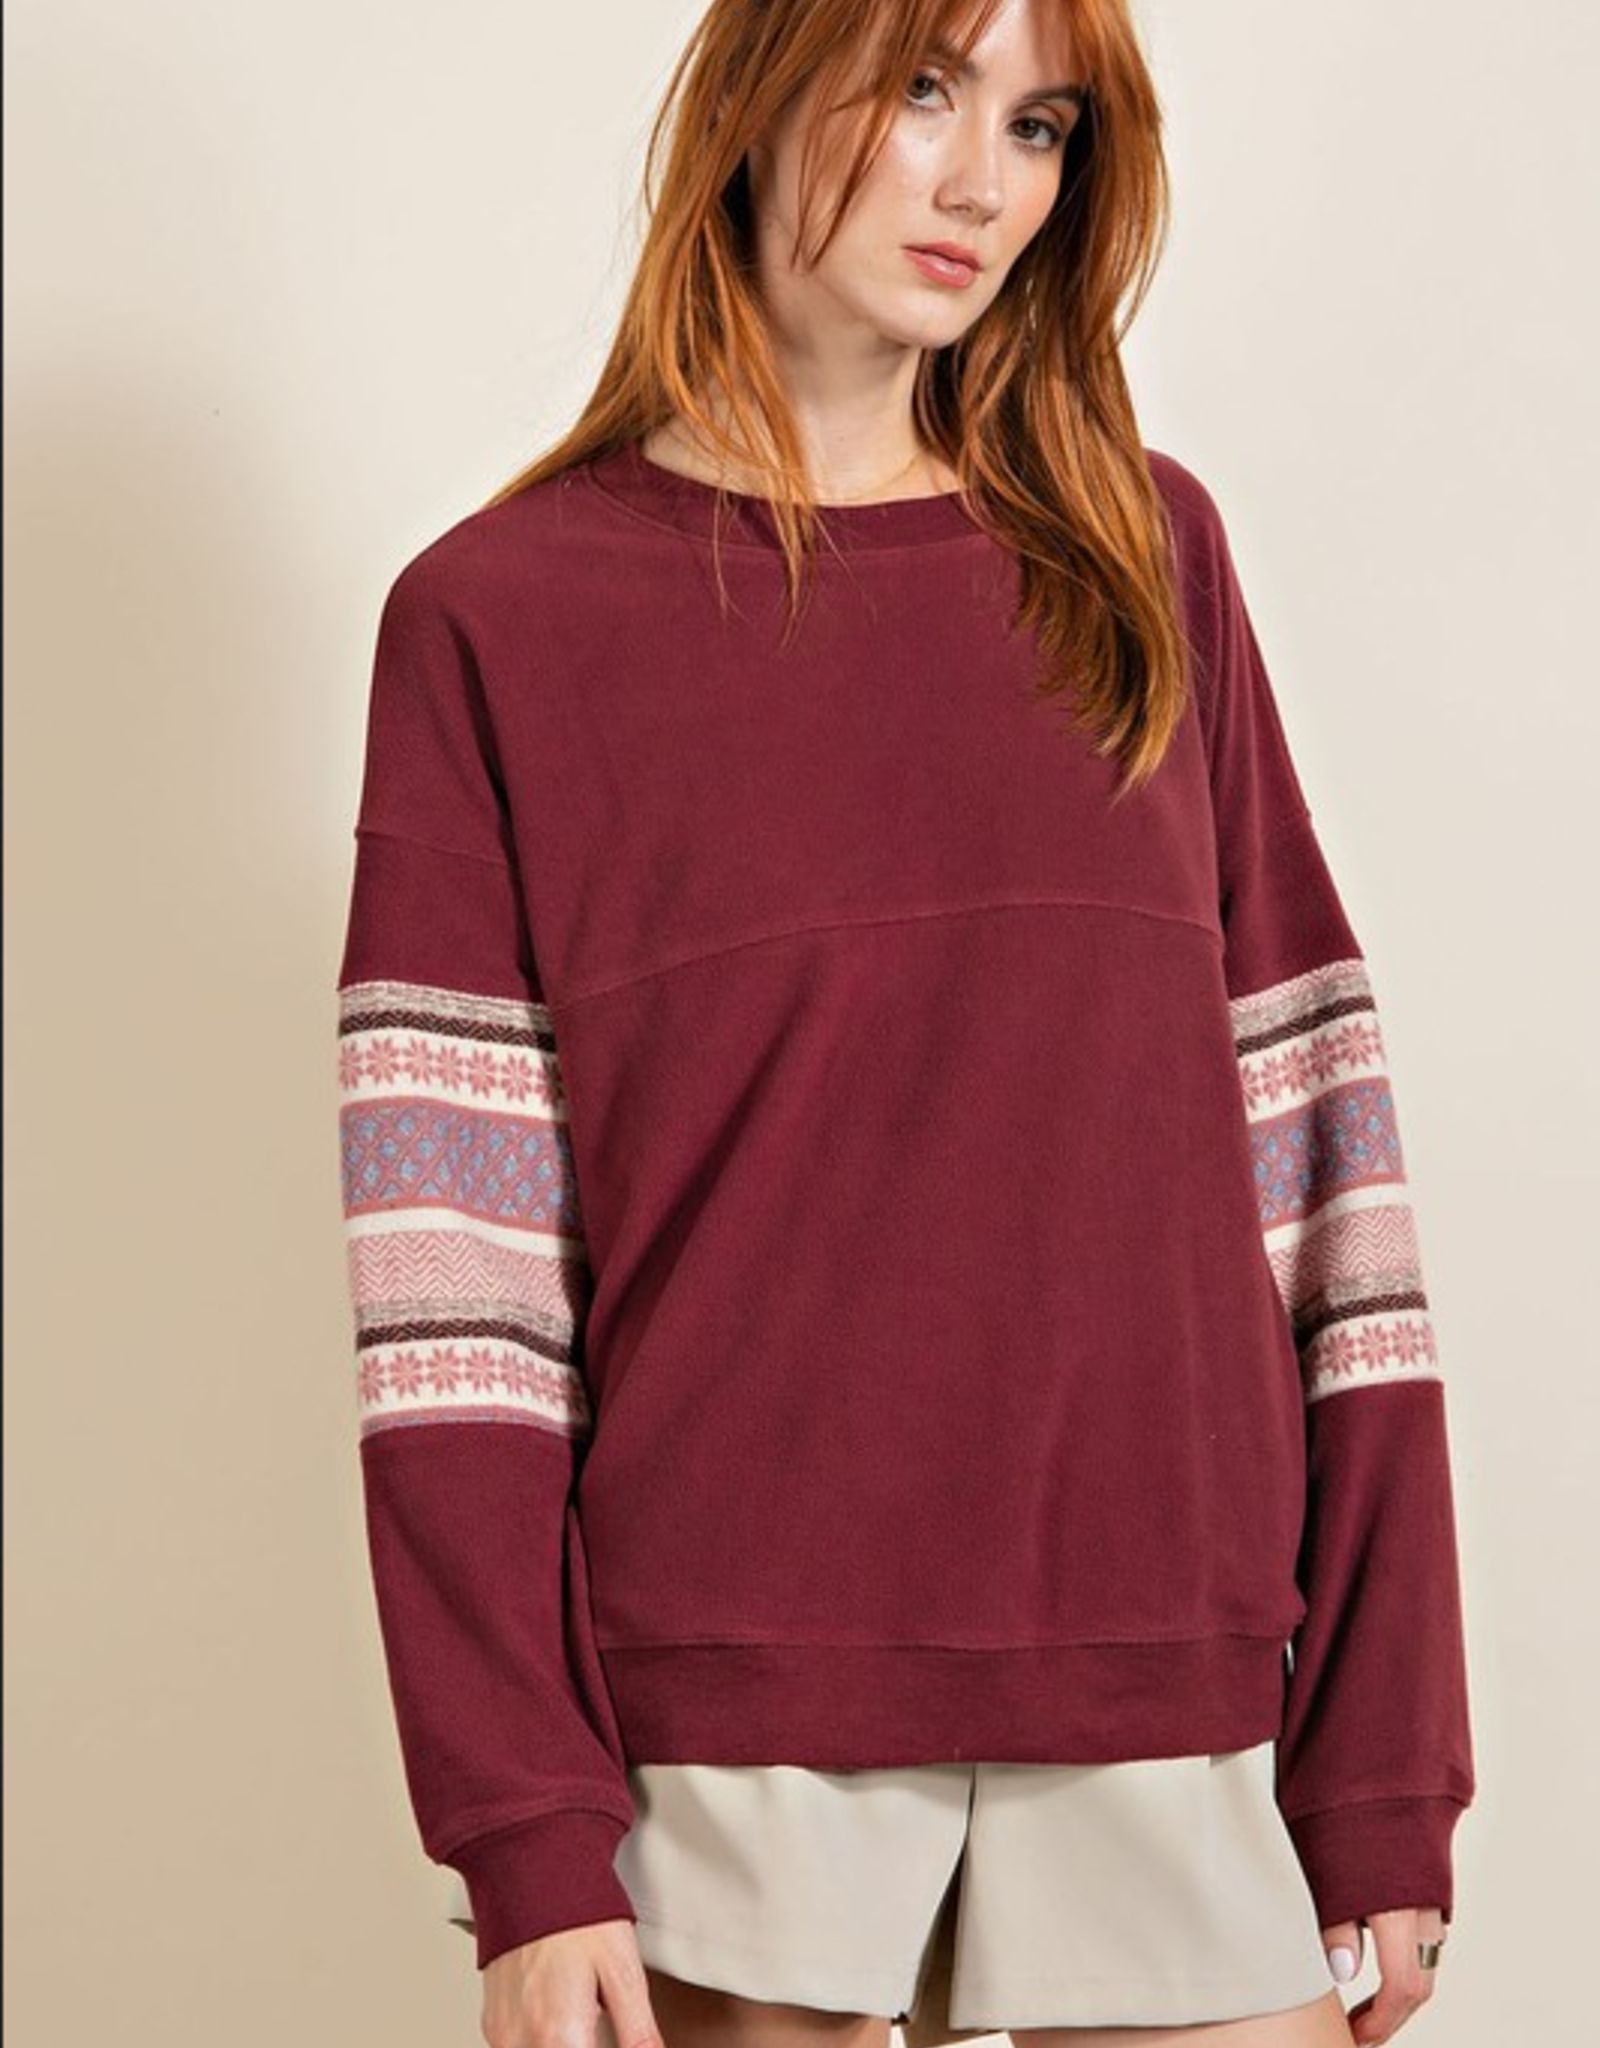 Easel Contrast Sleeve Sweatshirt